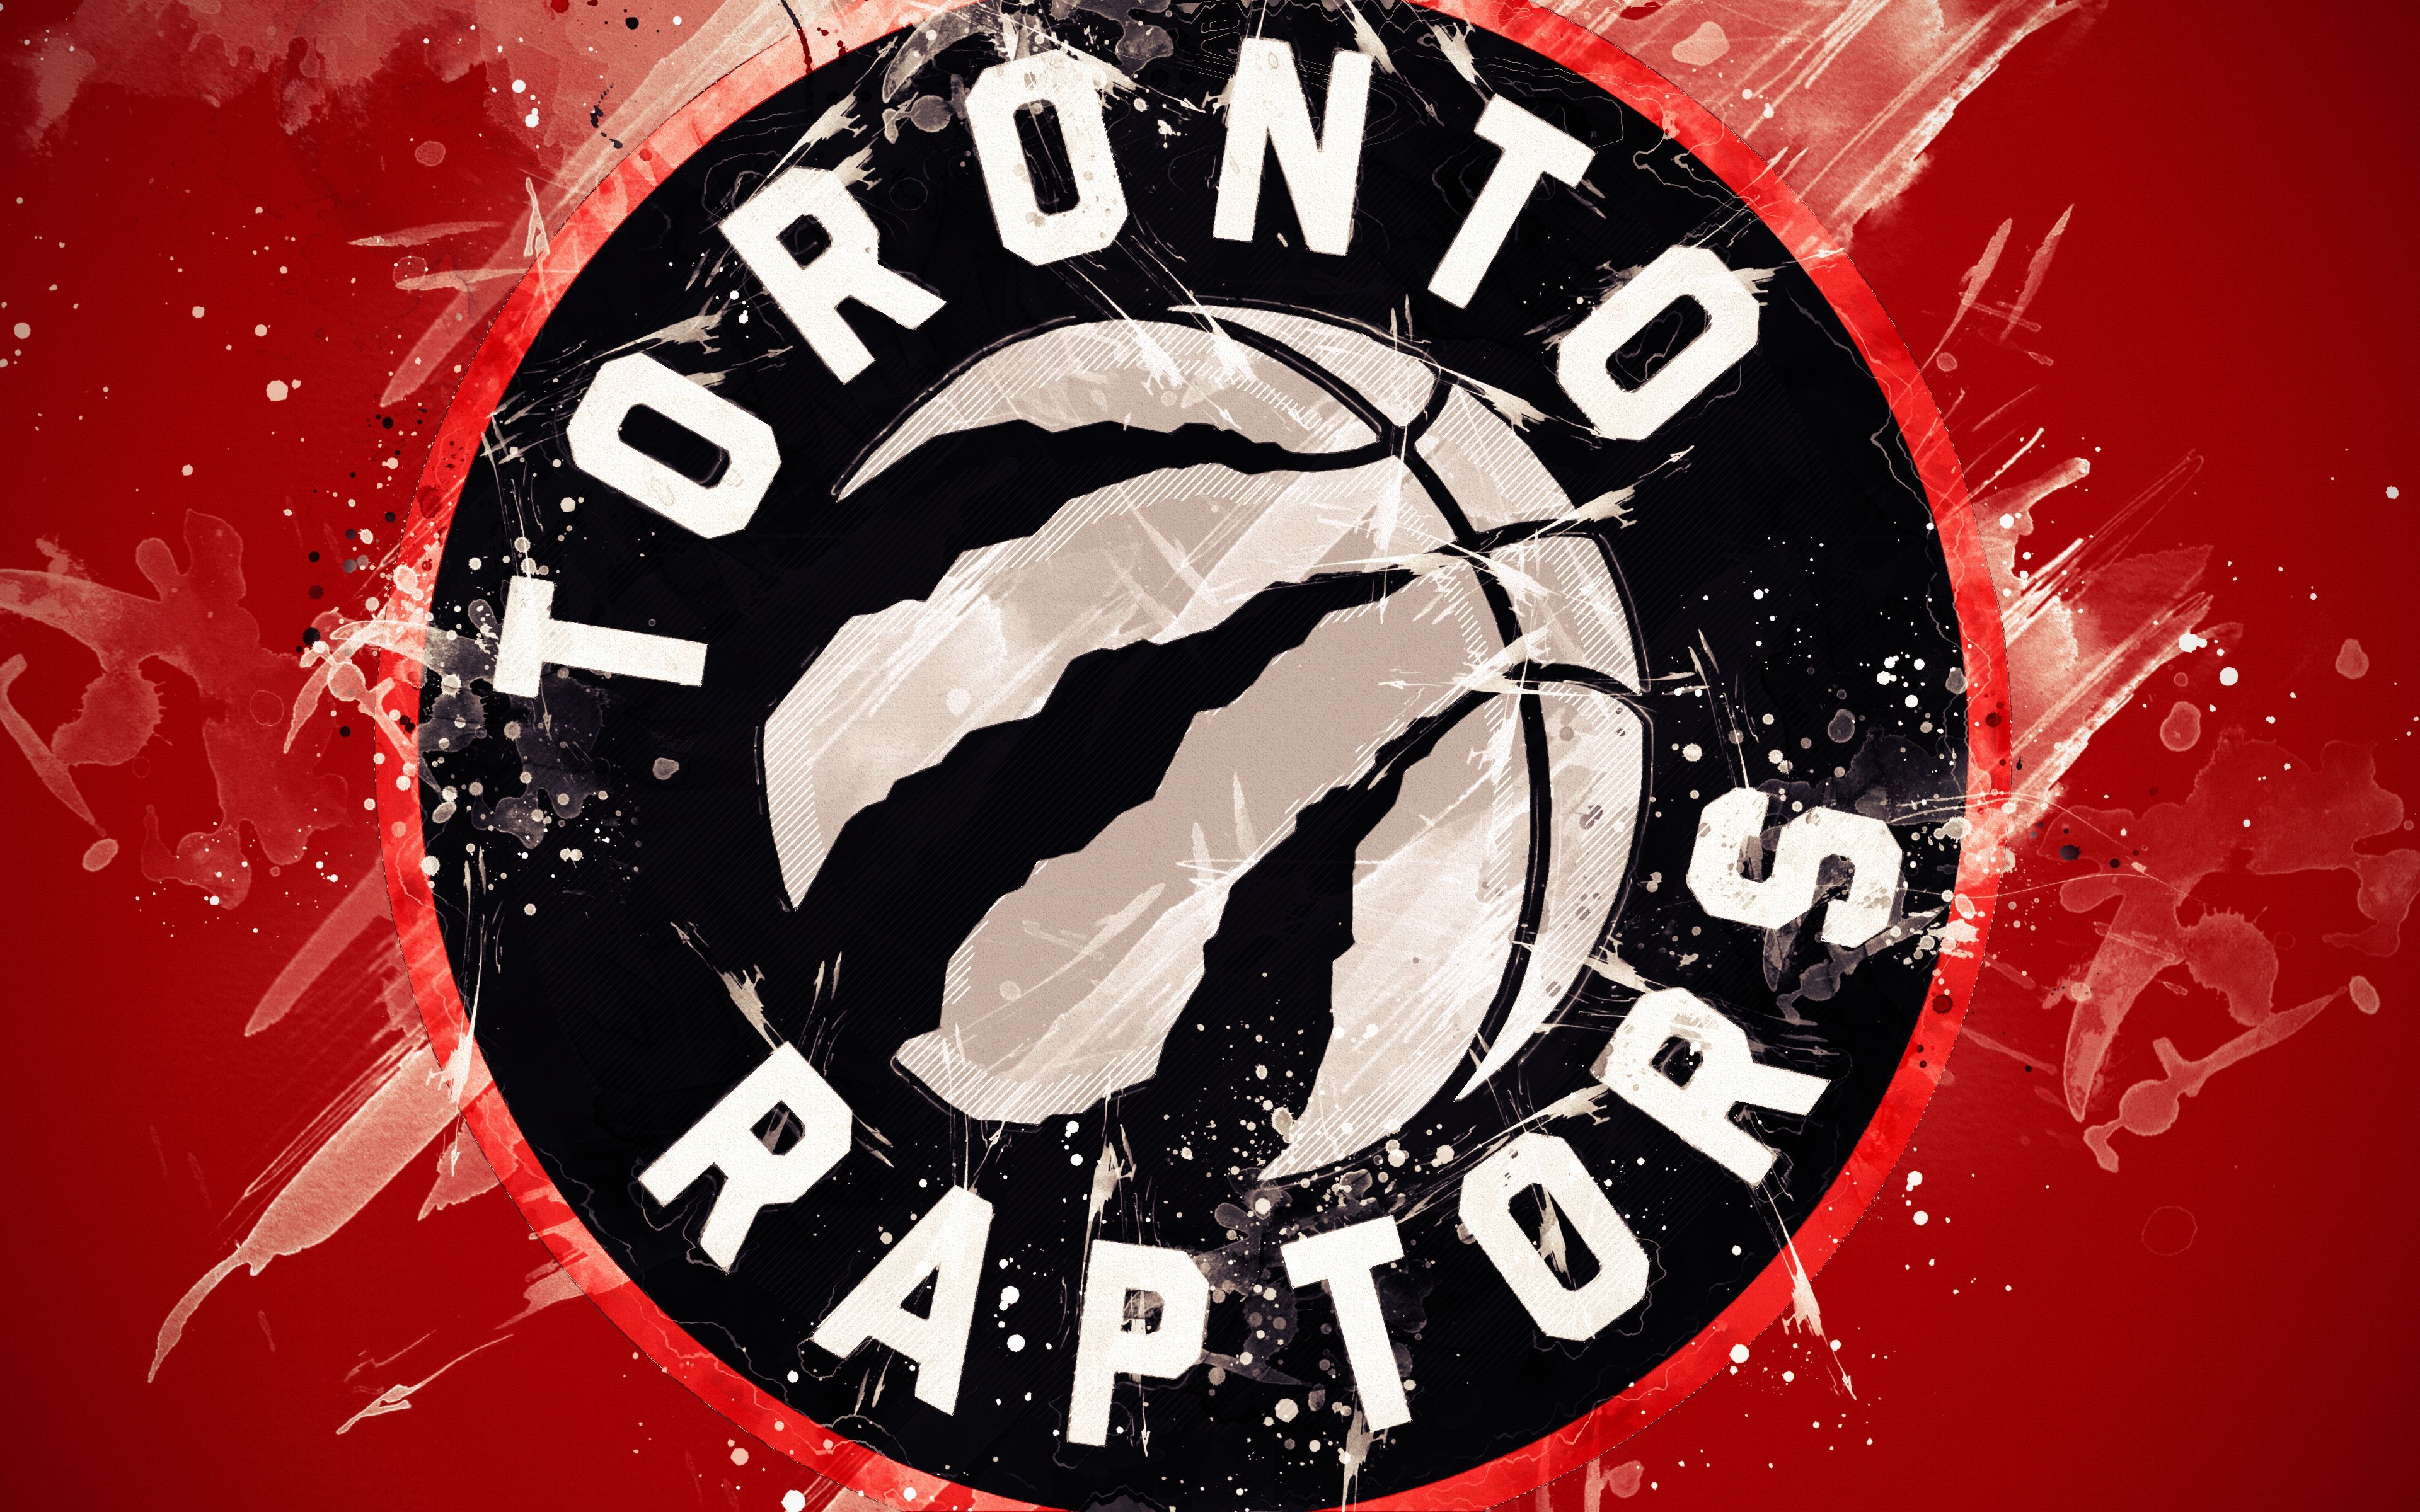 Toronto Raptors Logo Desktop Wallpapers Wallpaper Cave